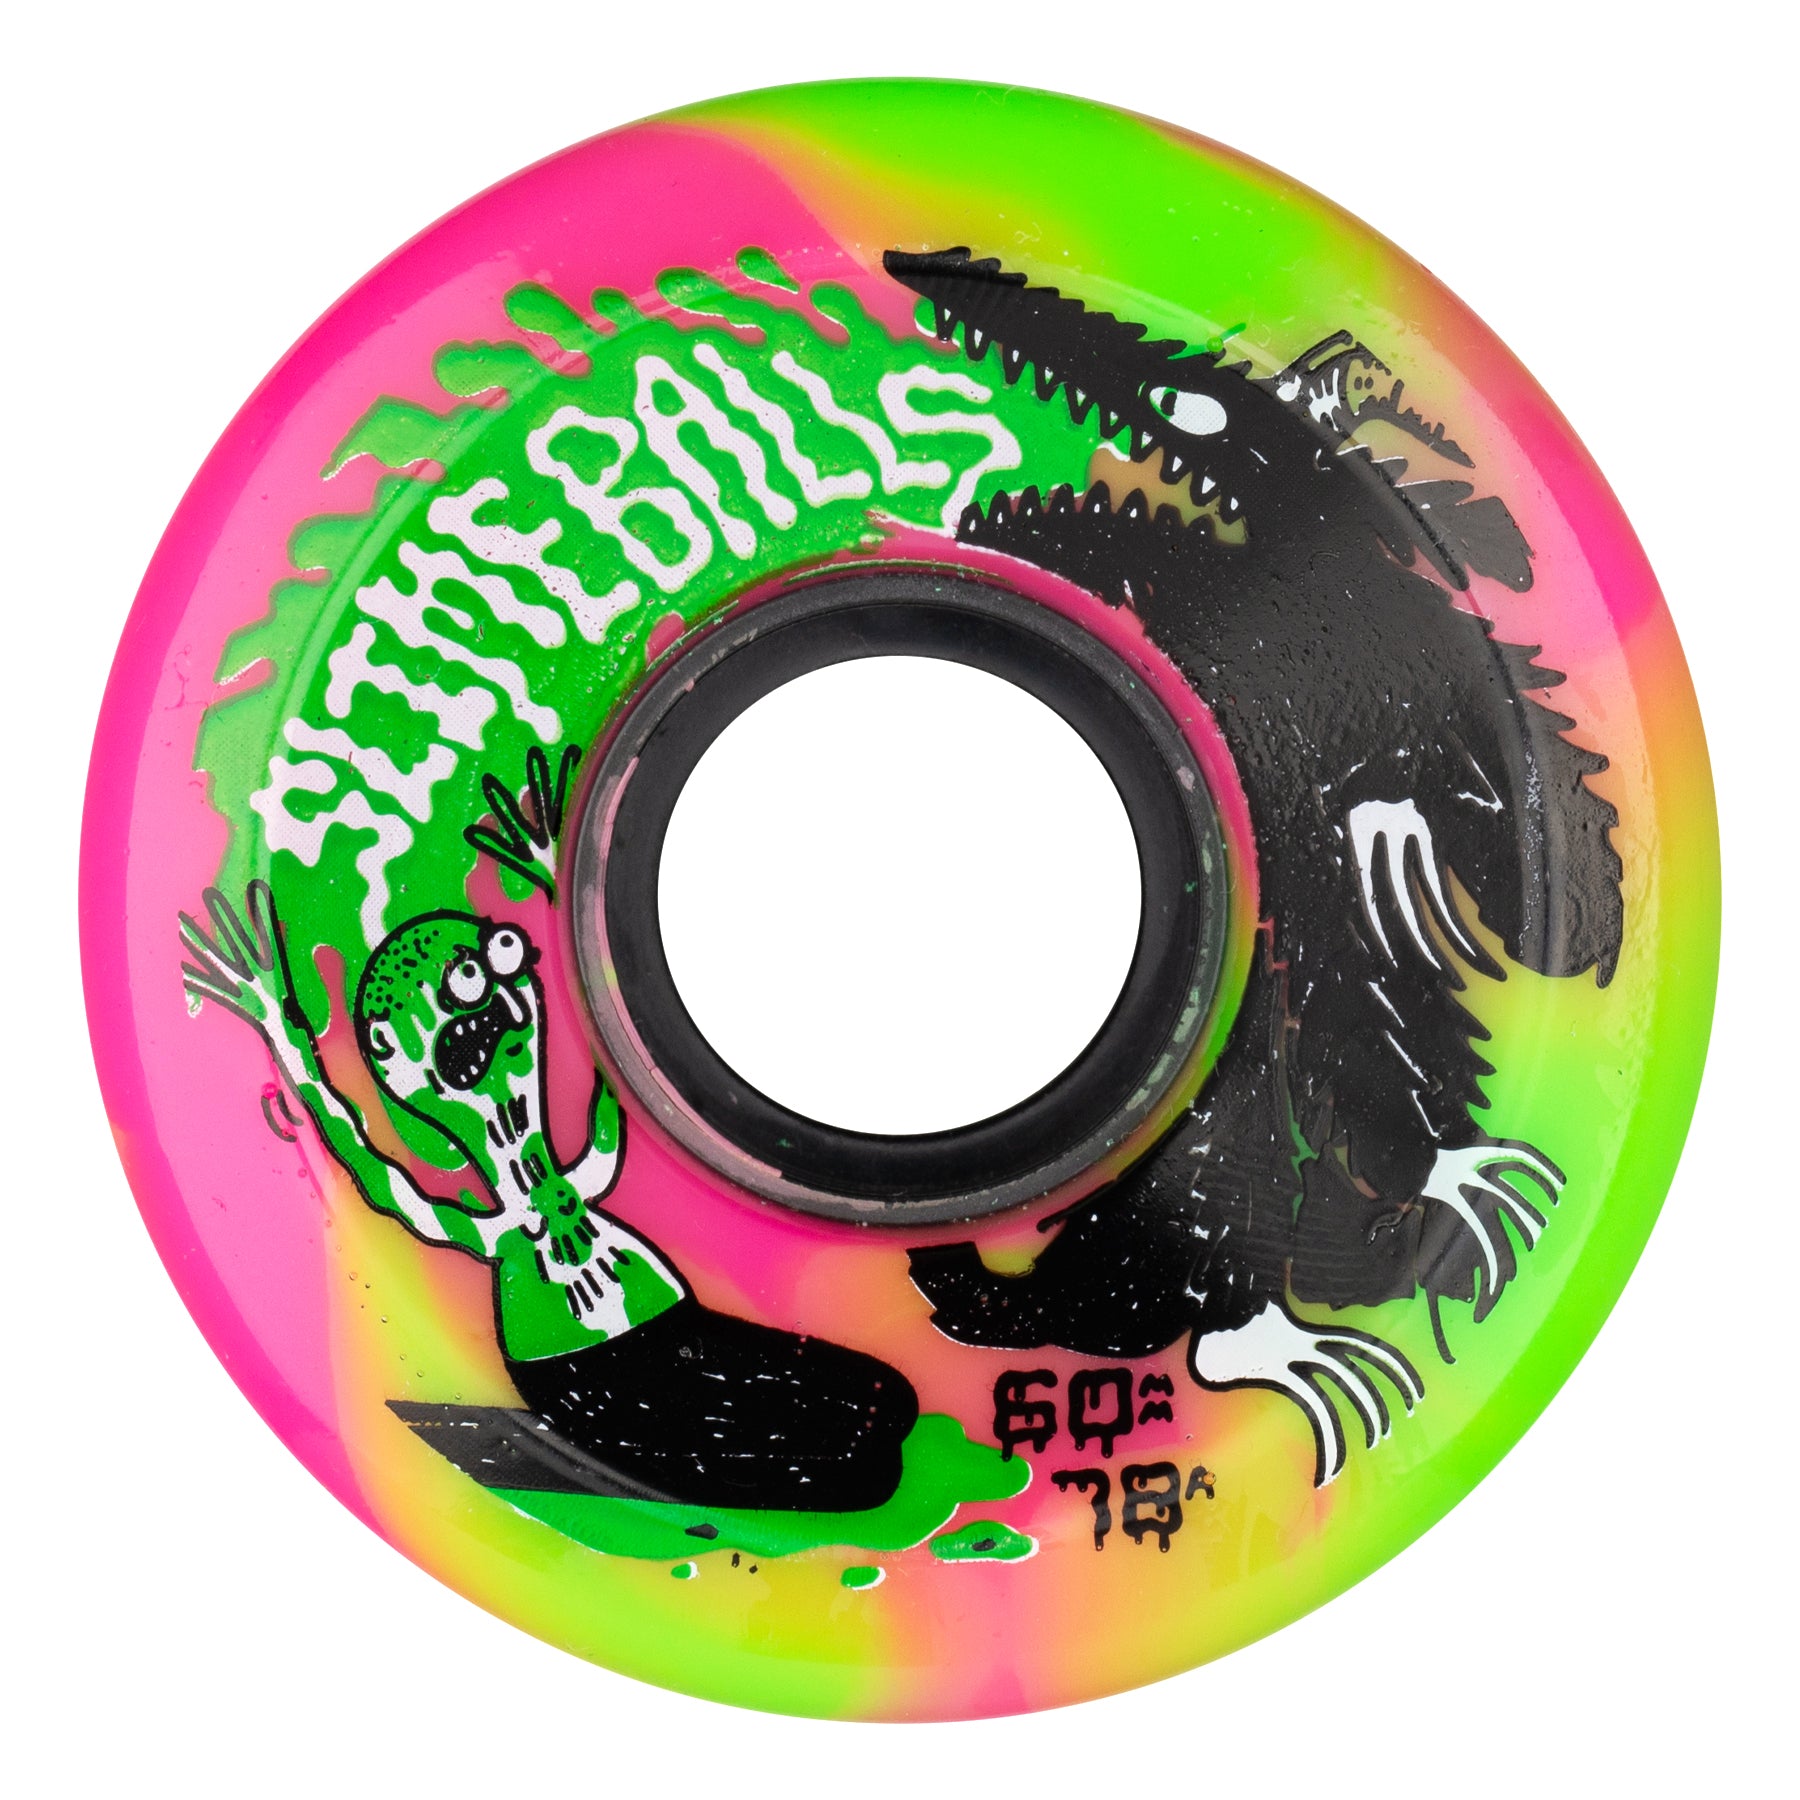 60mm Jay Howell OG Slime Pink Green Swirl 78a | Slime Balls